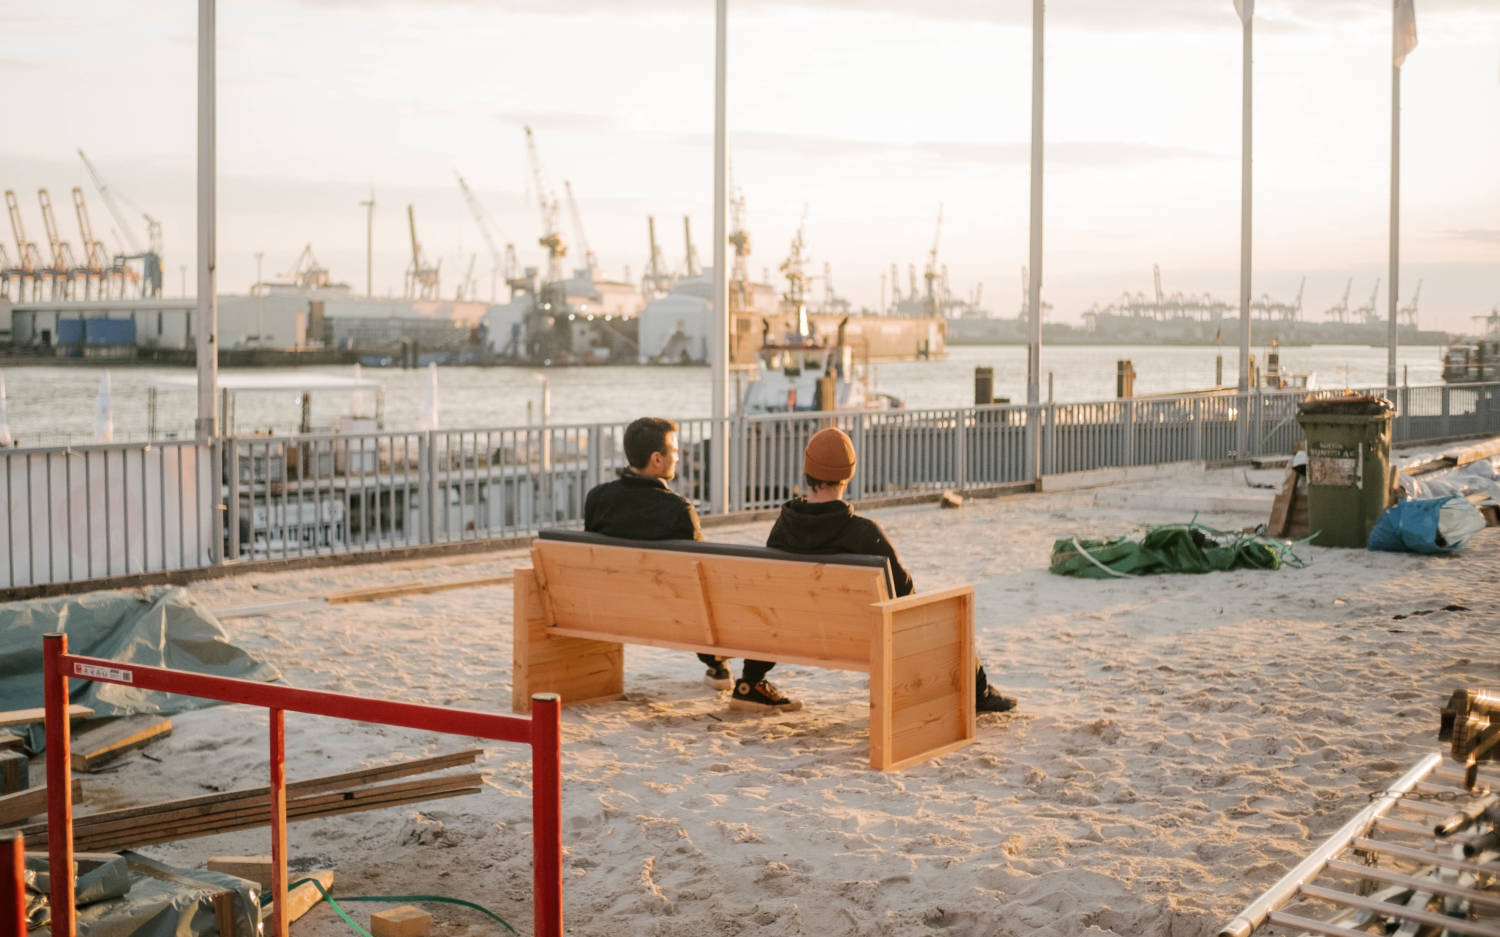 Weißer Sand unter den Füßen und den Blick auf die Hafenkrähne – das neue Sonnendeck St. Pauli / ©Lea Harms